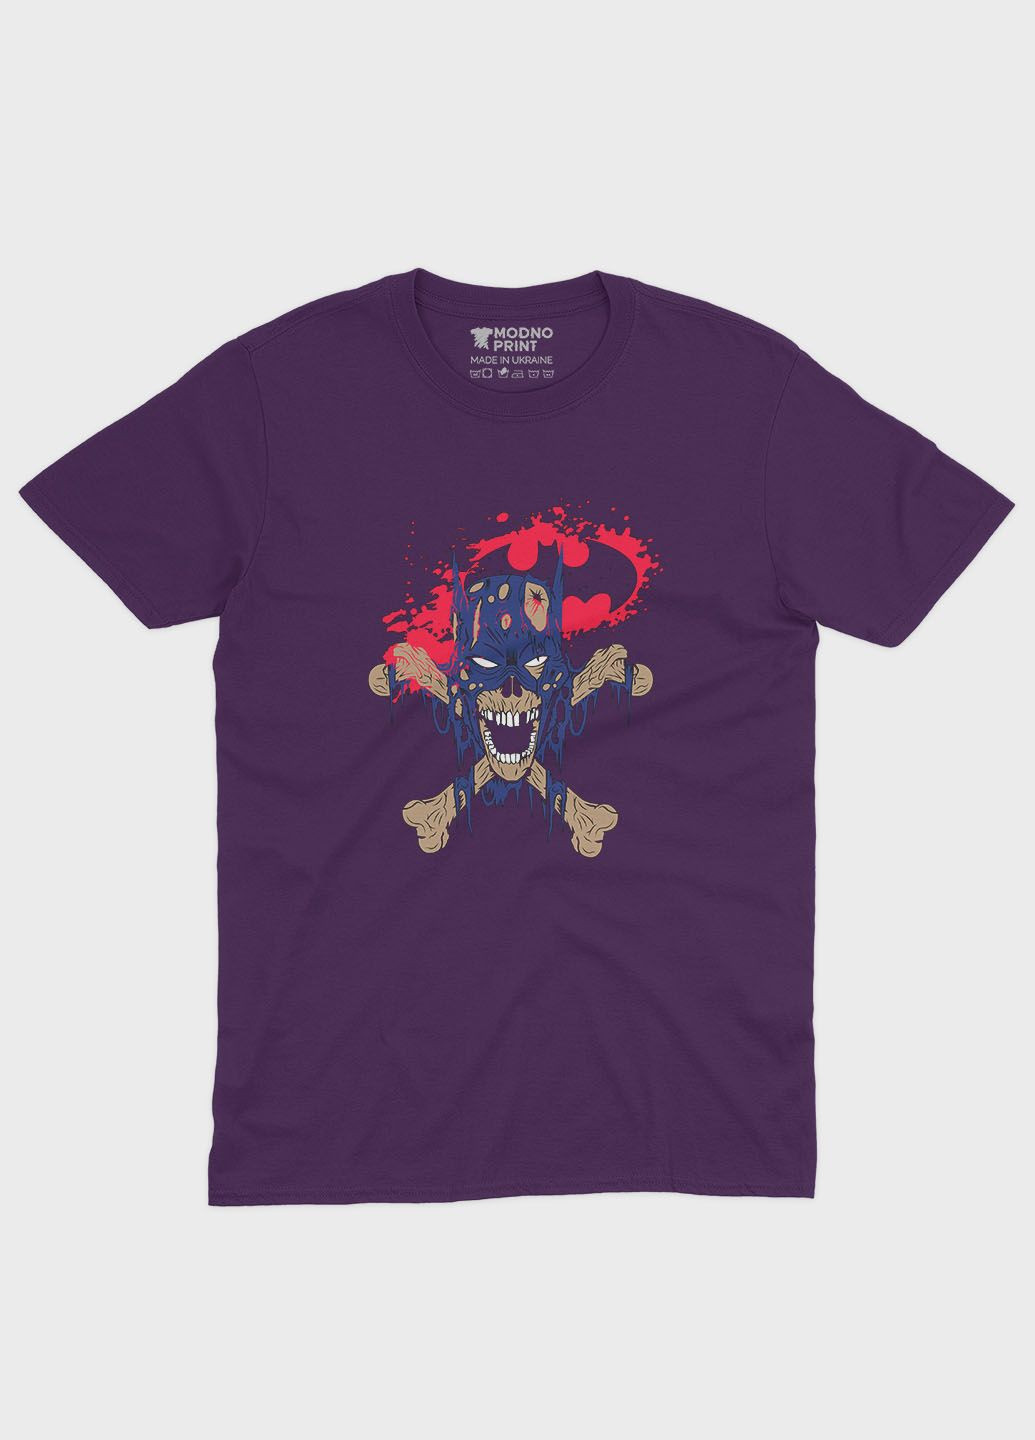 Фиолетовая демисезонная футболка для девочки с принтом супергероя - бэтмен (ts001-1-dby-006-003-038-g) Modno